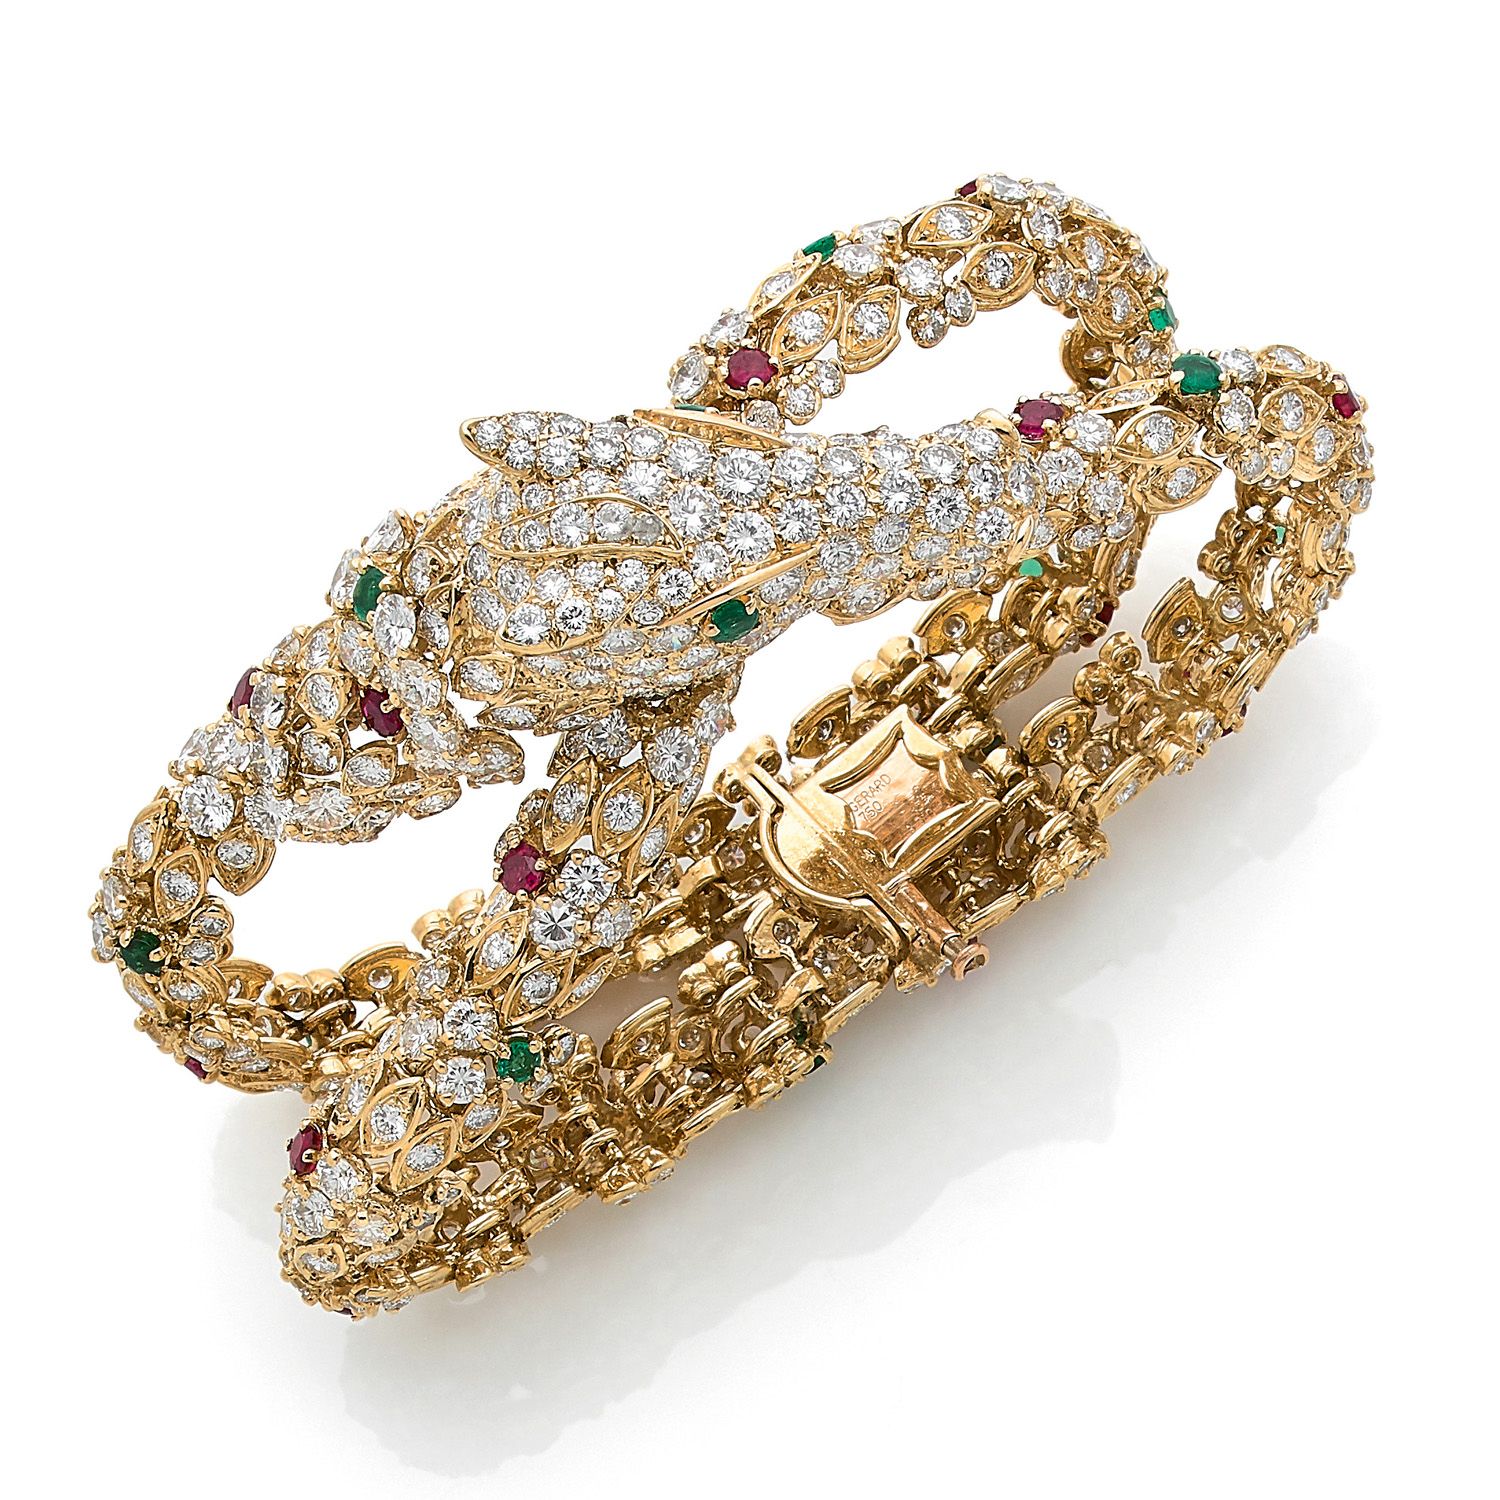 Null °GERARD，巴黎

1975-80年

马 "图案

18K黄金（750‰）铰链式手镯，由两条由马头连接的丝带组成

镶嵌有钻石、红宝石和圆形祖母&hellip;